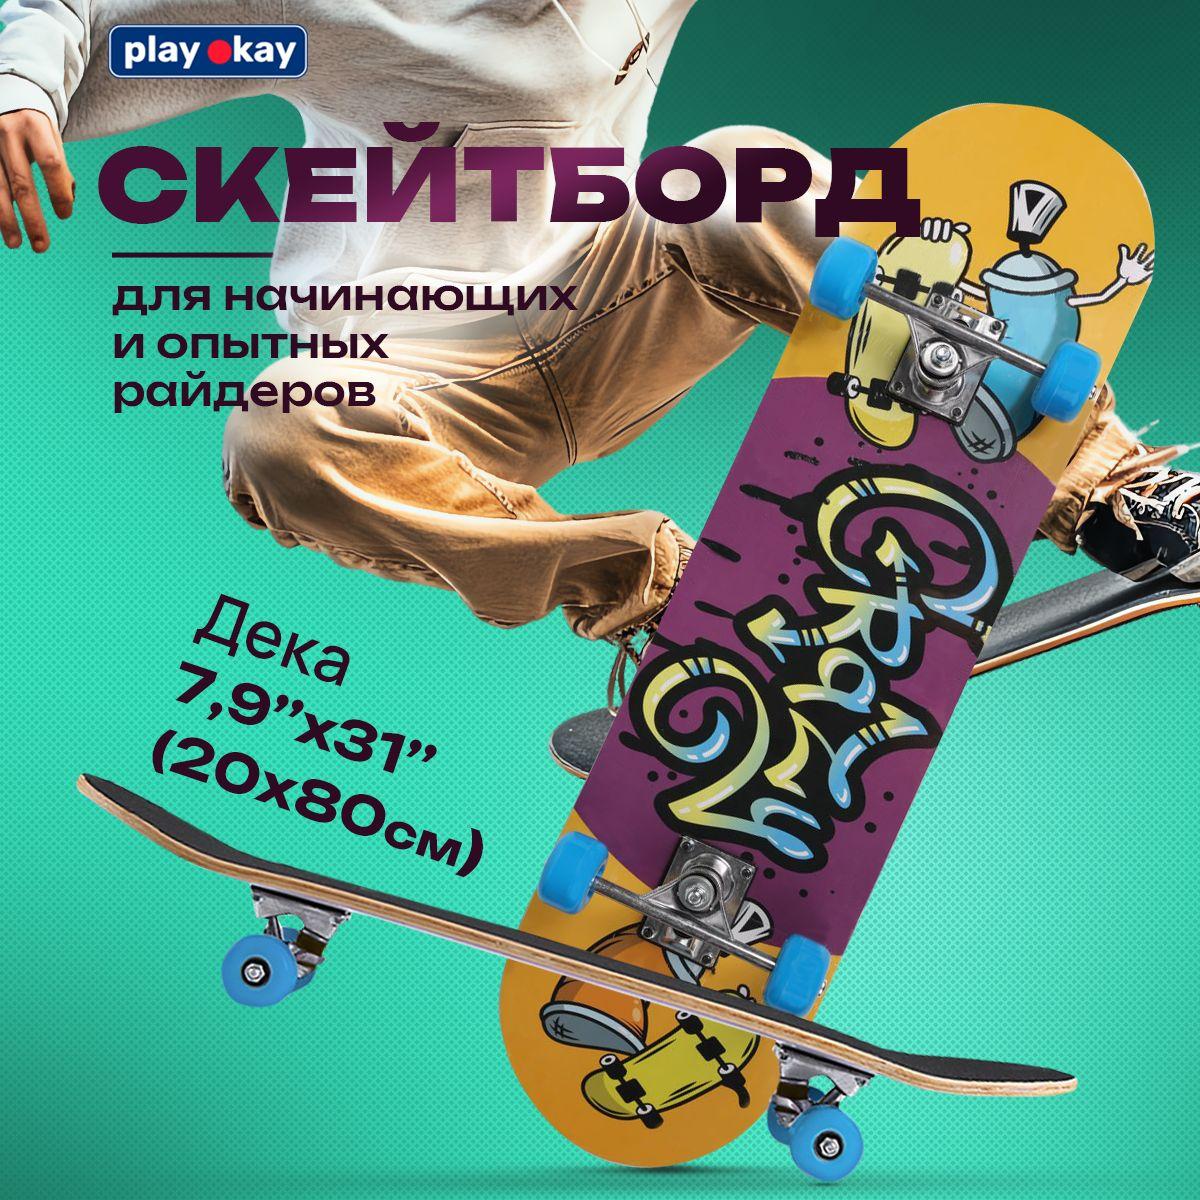 play okay | Скейт детский Play Okay для мальчиков и девочек, максимальный вес до 60 кг, трюковой, 4 колеса, желтый и фиолетовый